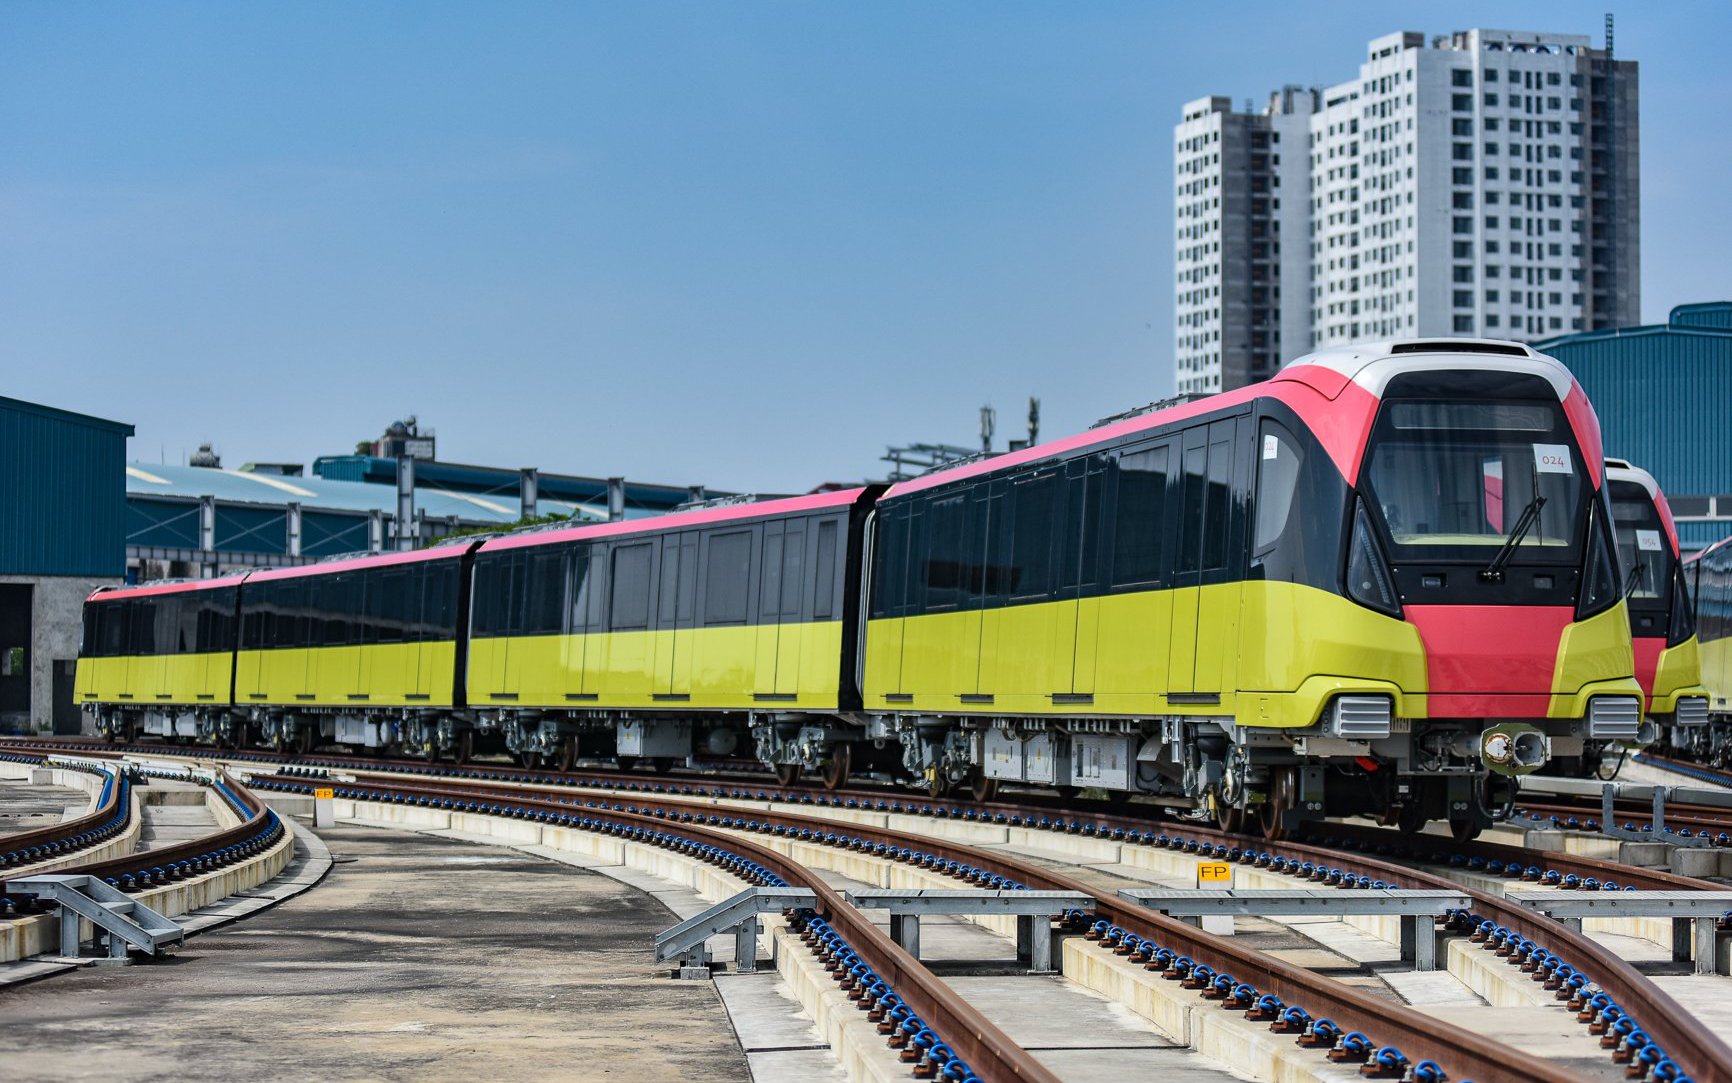 Đường sắt đô thị Nhổn - ga Hà Nội: Xin lùi thời gian vận hành thêm 5 năm, đội vốn hơn 6.300 tỷ đồng